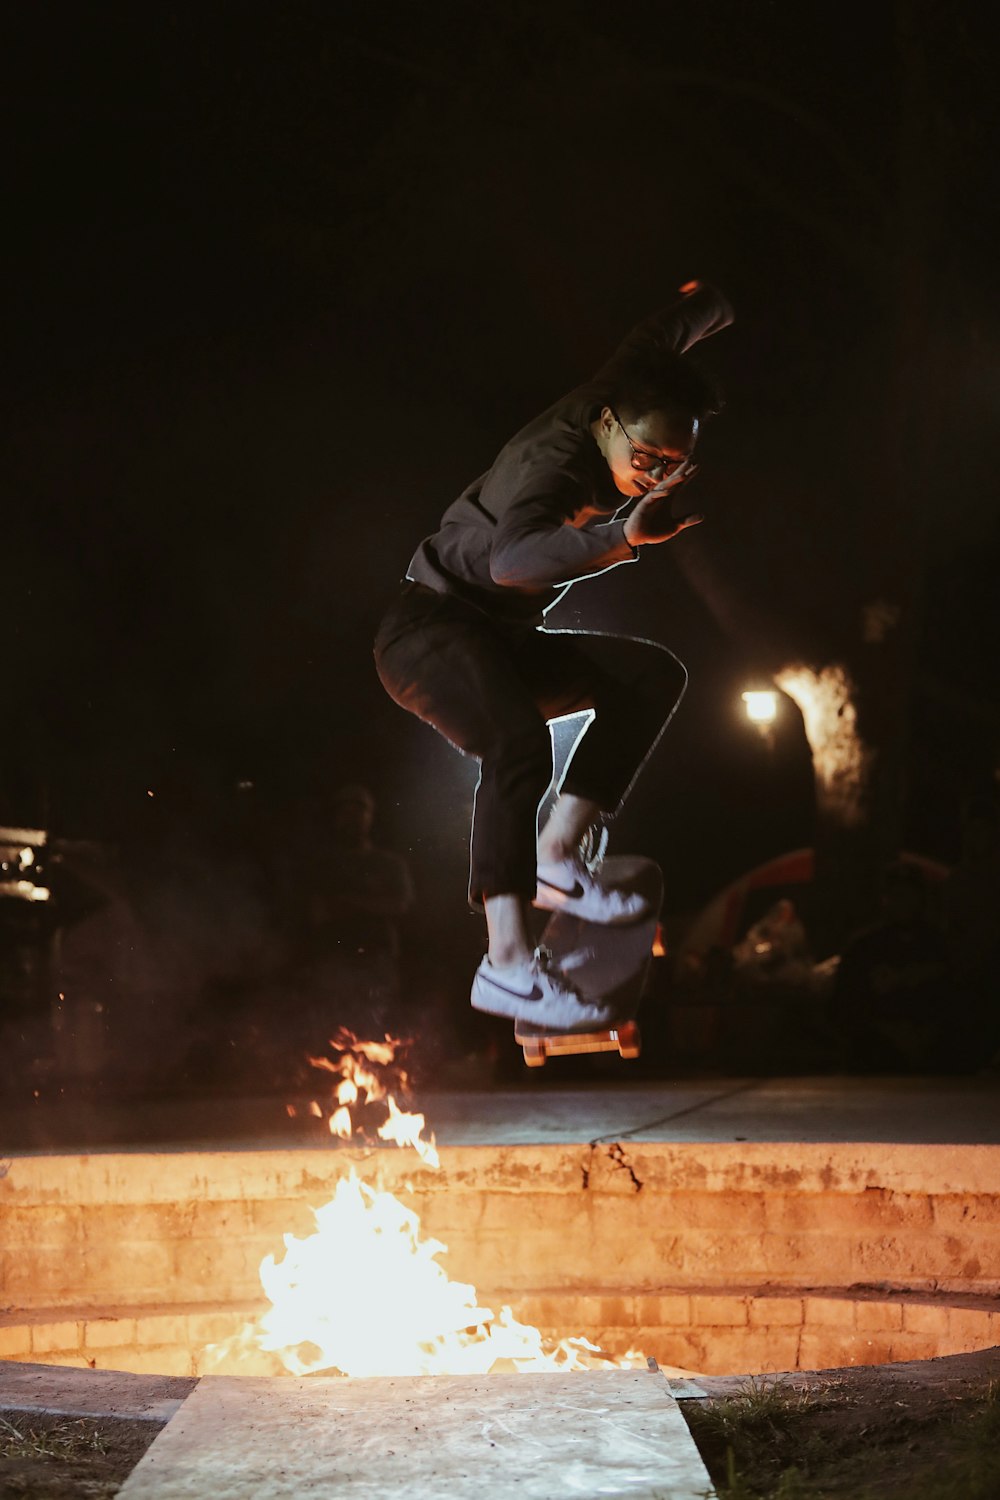 man in black jacket skateboarding near fire